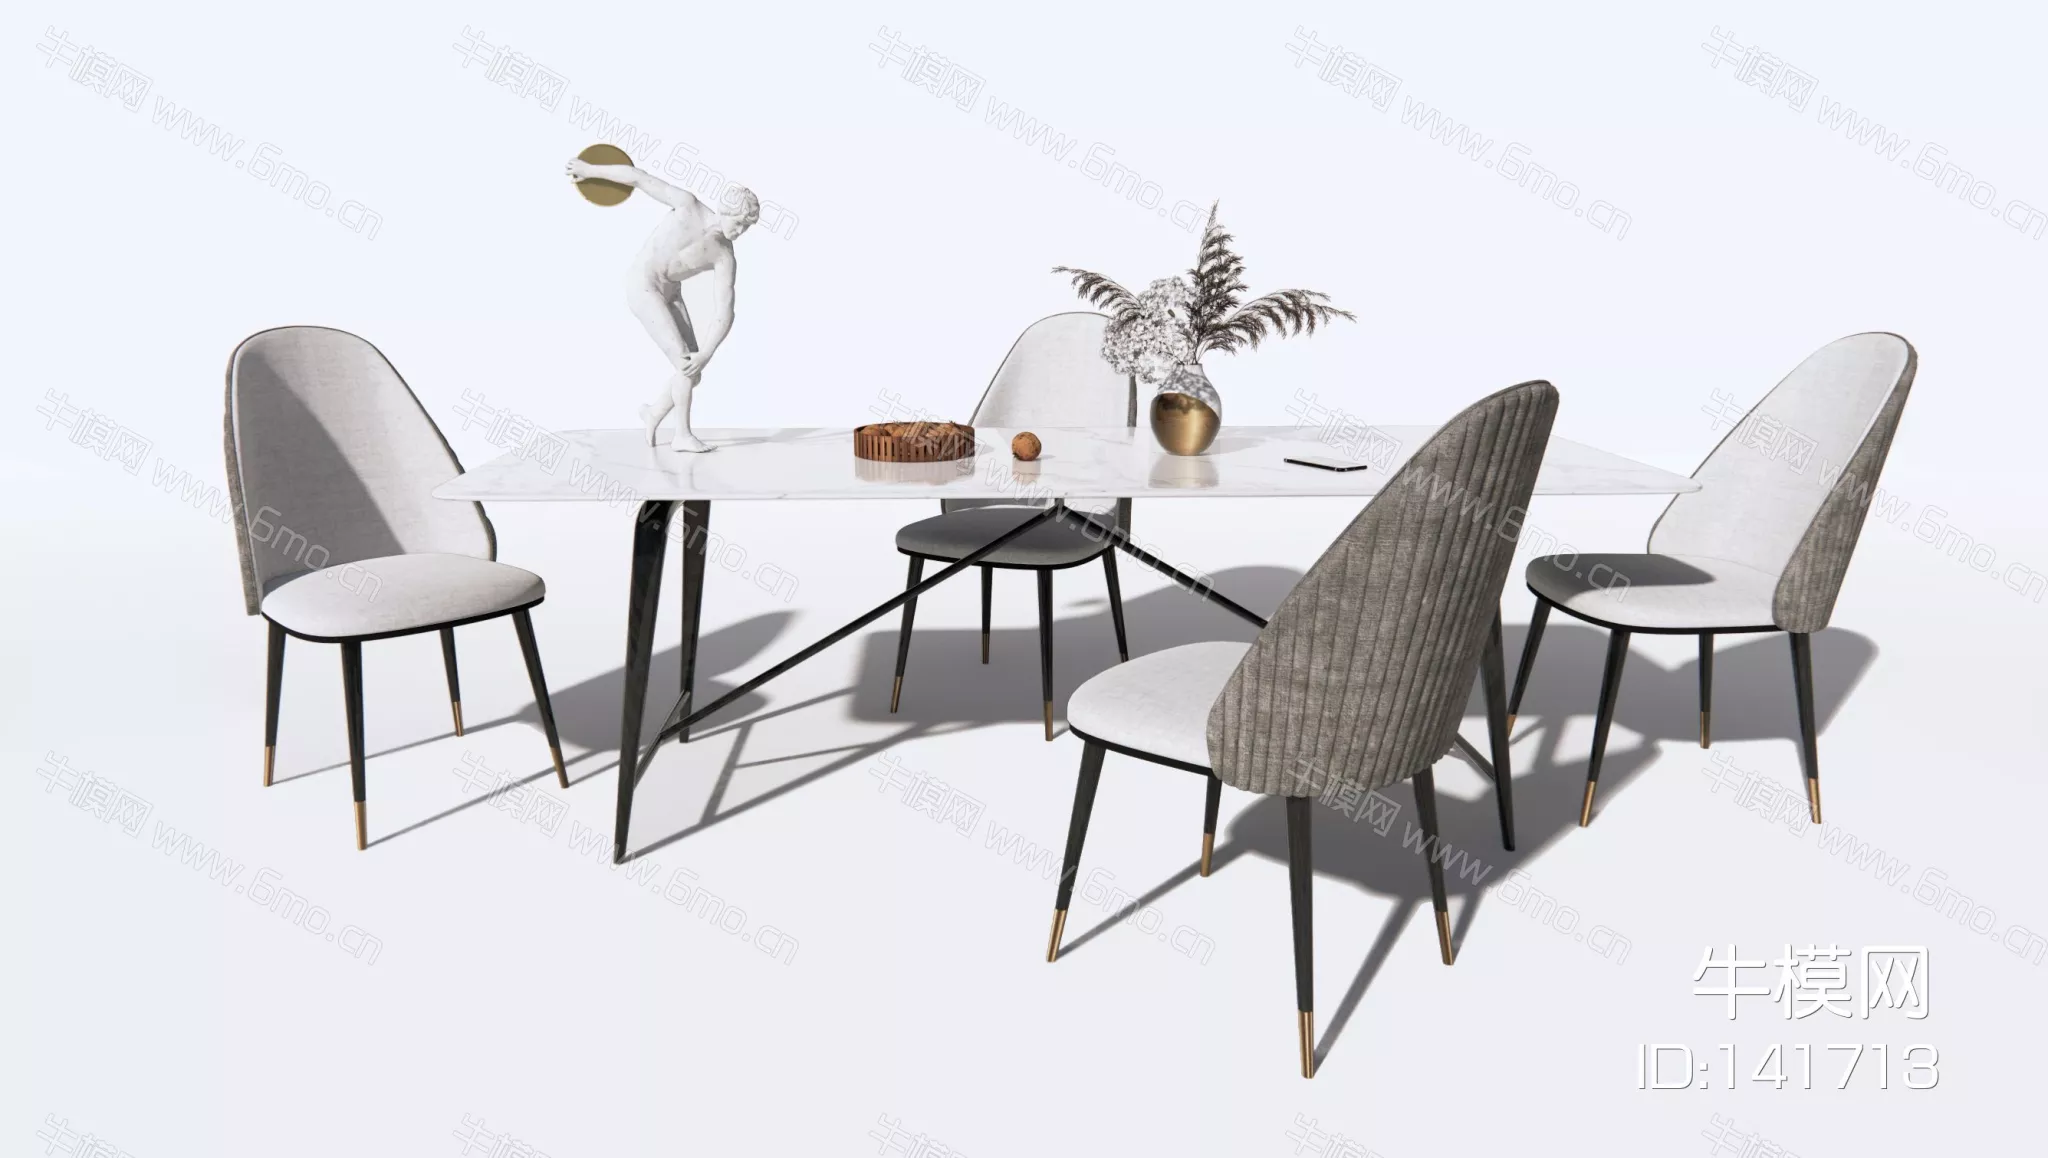 MODERN DINING TABLE SET - SKETCHUP 3D MODEL - ENSCAPE - 141713